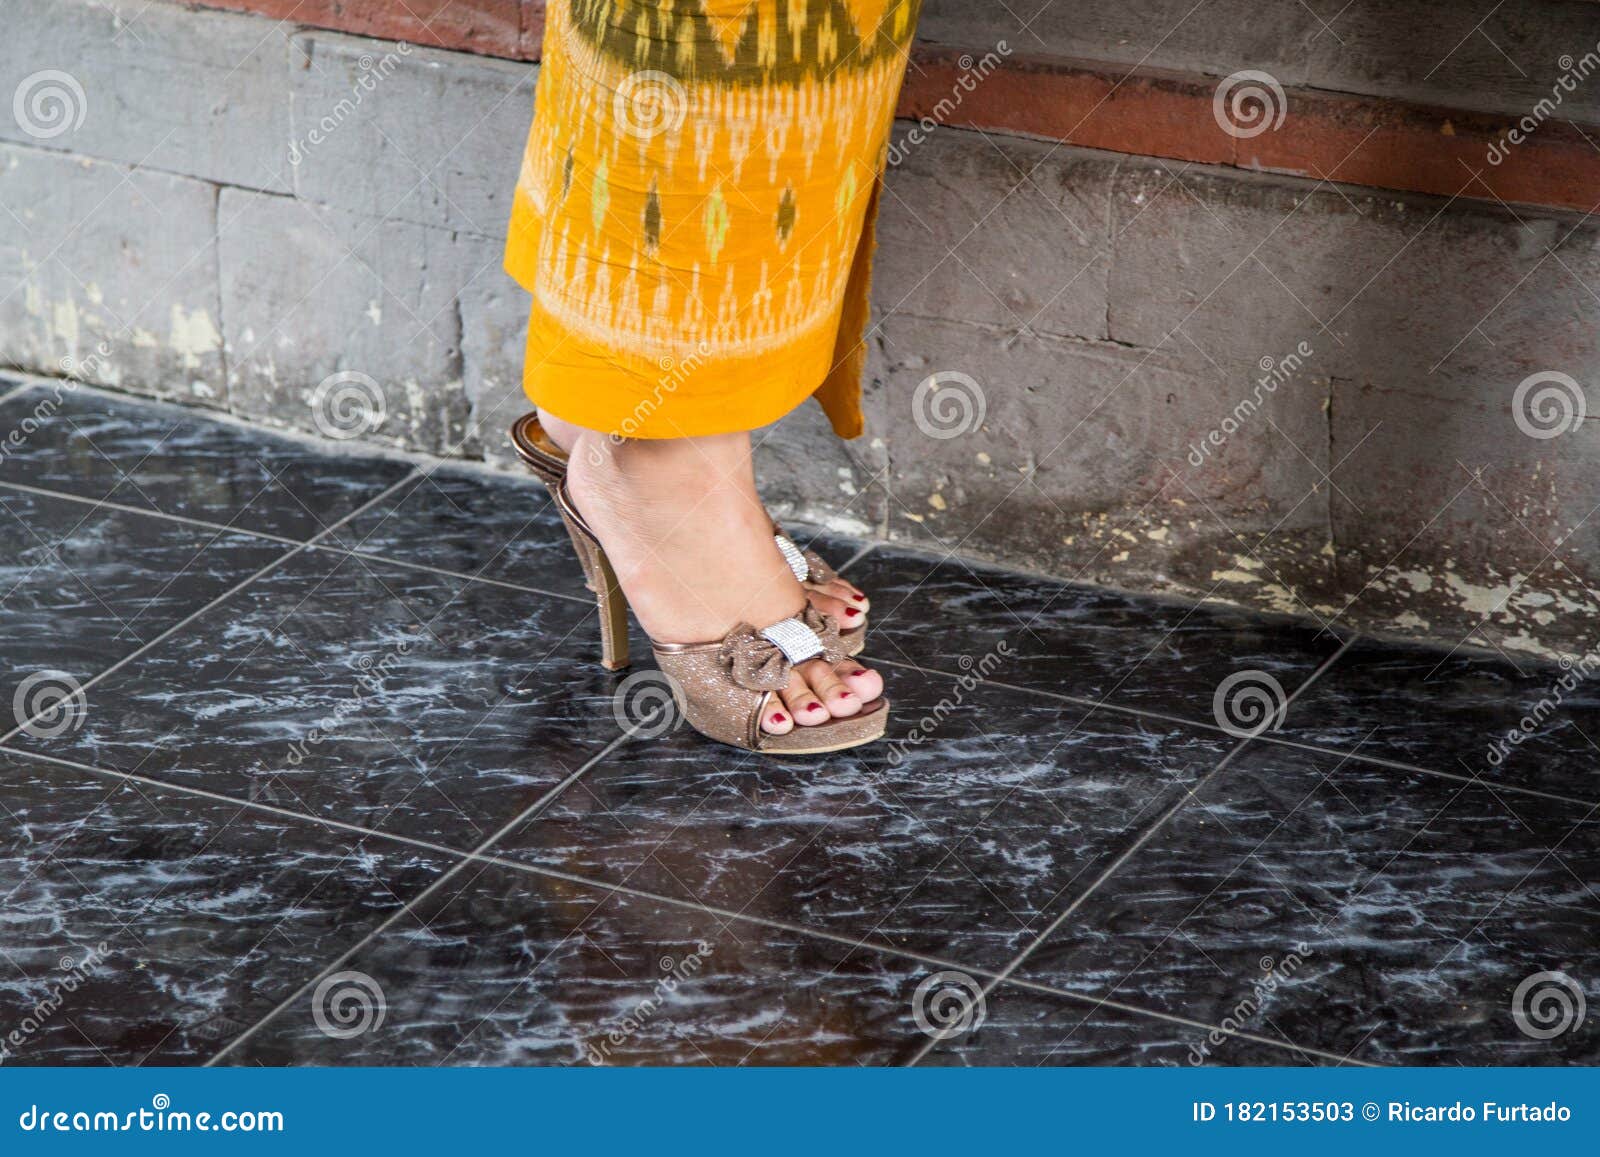 bali women`s feet